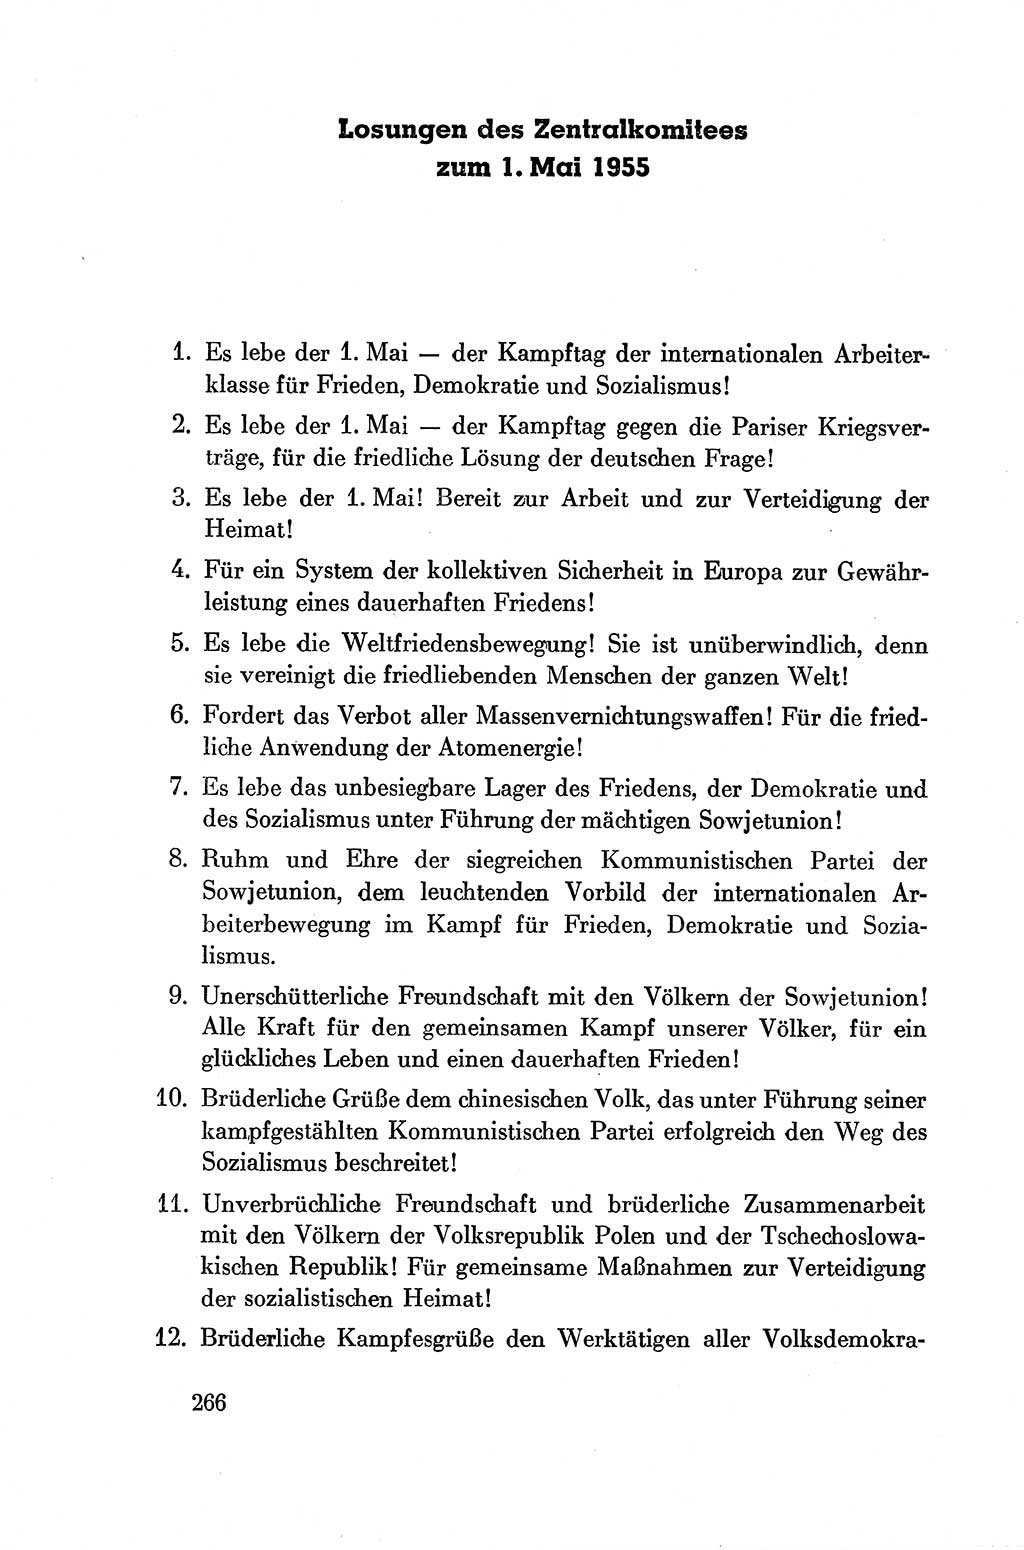 Dokumente der Sozialistischen Einheitspartei Deutschlands (SED) [Deutsche Demokratische Republik (DDR)] 1954-1955, Seite 266 (Dok. SED DDR 1954-1955, S. 266)